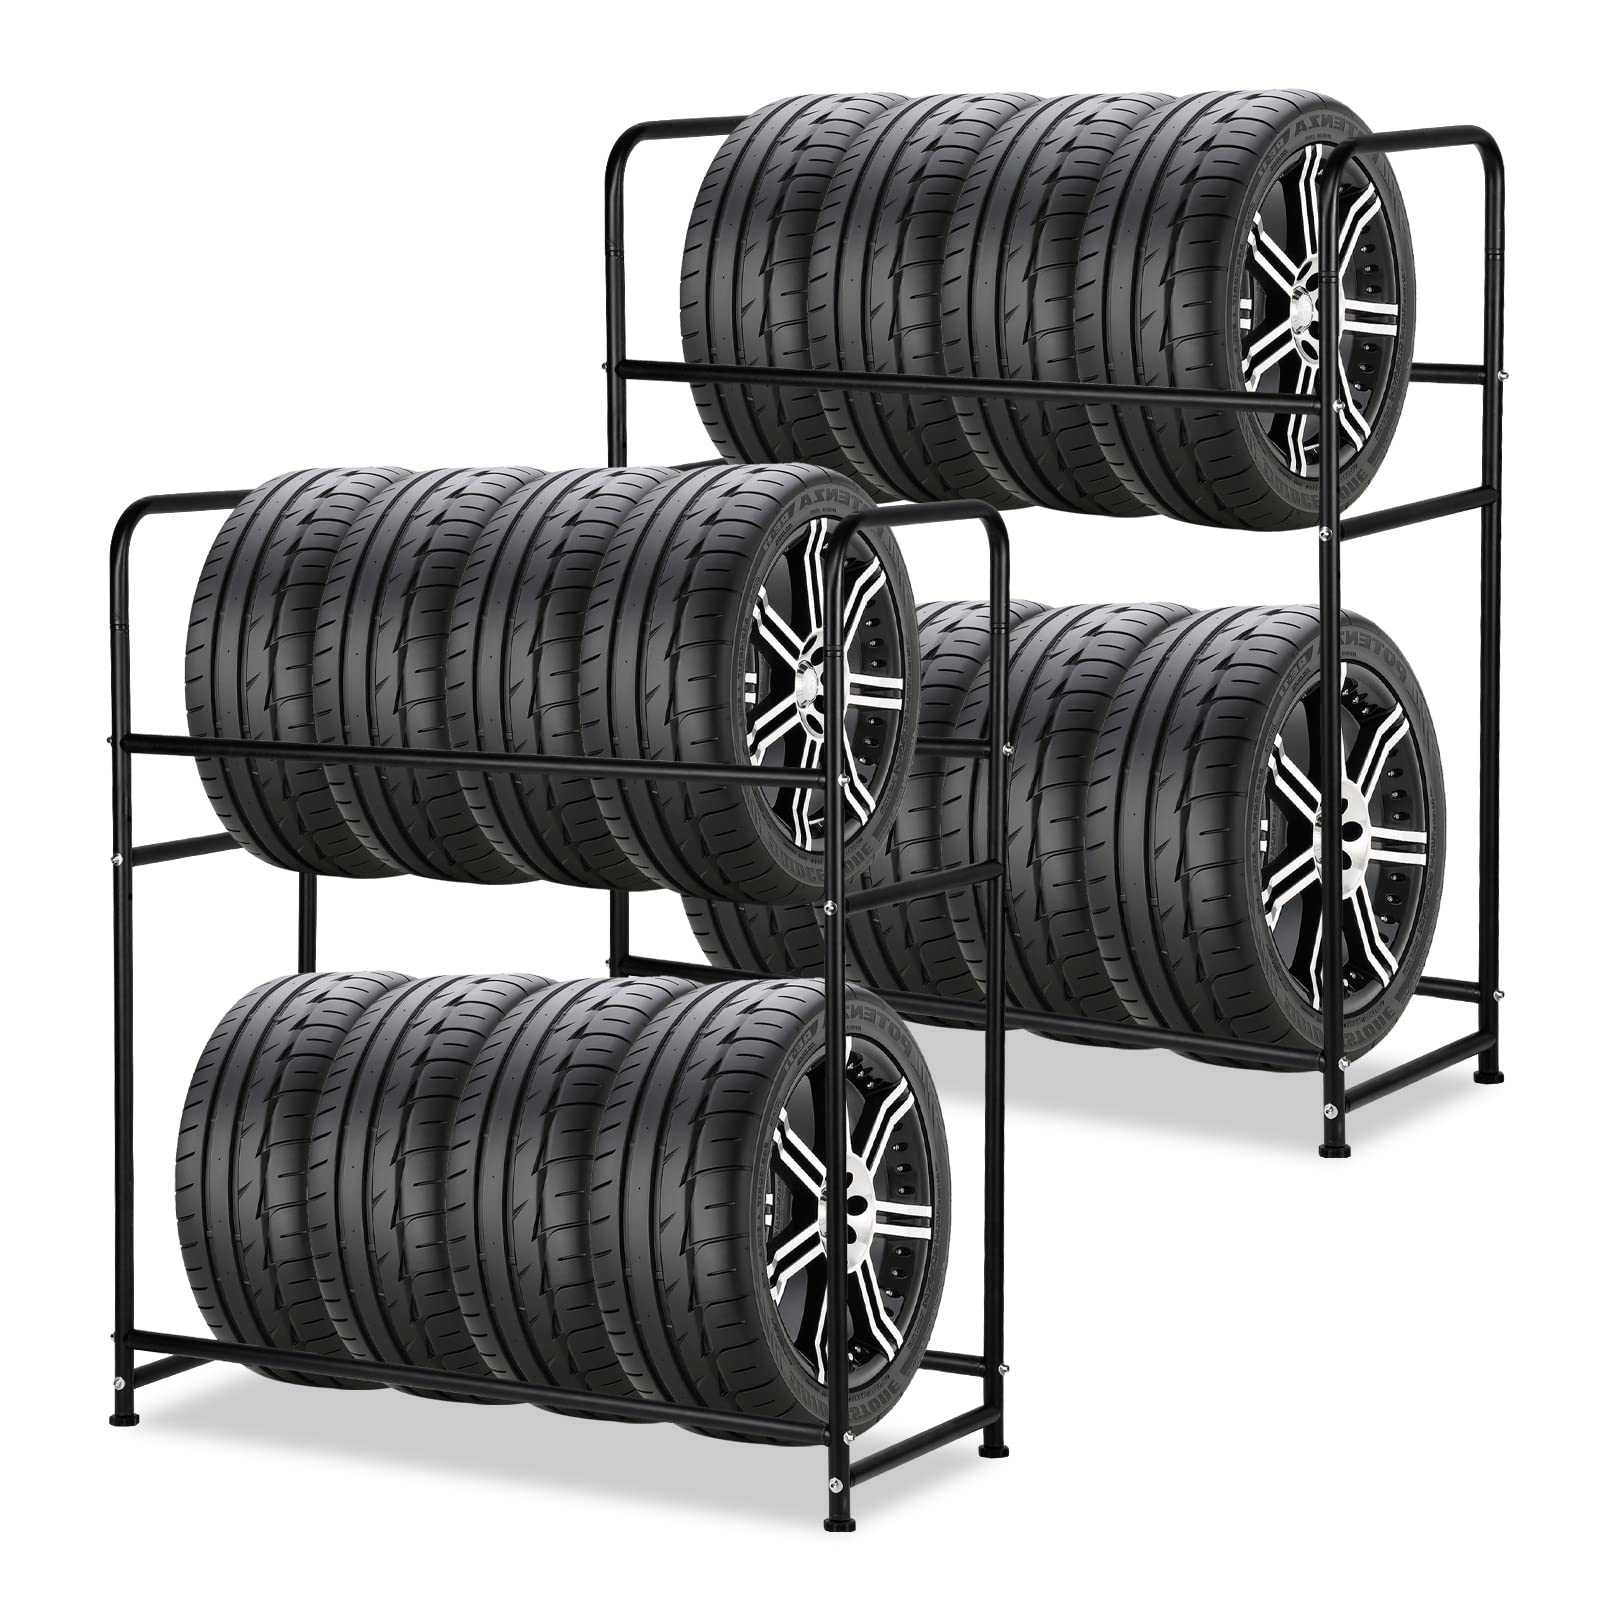 Ansobea 2X Reifenregal für 8 Reifen Reifenständer | HxBxT 117x107x46 cm | Ladekapazität 180KG | mit Reifenschutzhülle | bis 240 mm Reifenbreite | Reifenhalter für platzsparende Lagerung von Ansobea